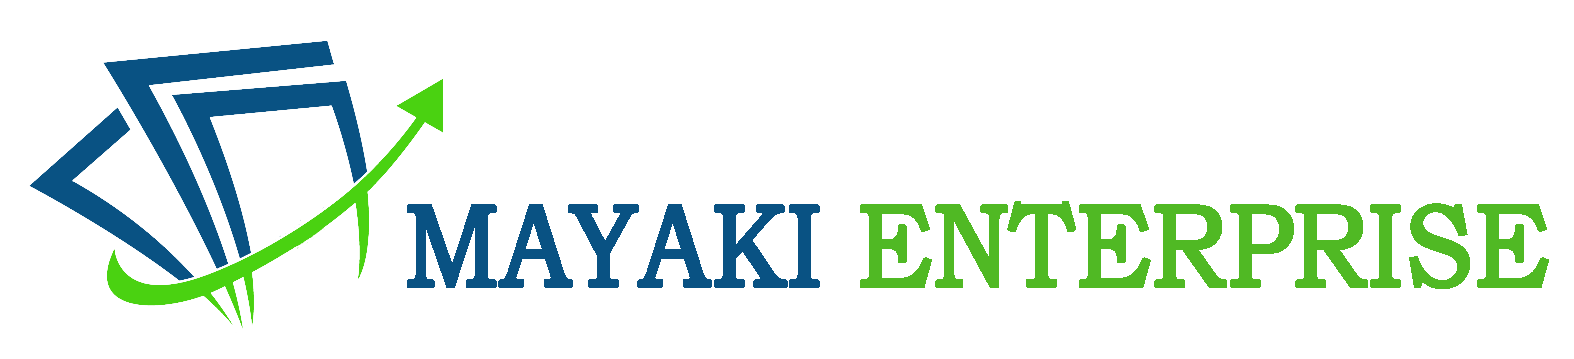 Mayaki Enterprise